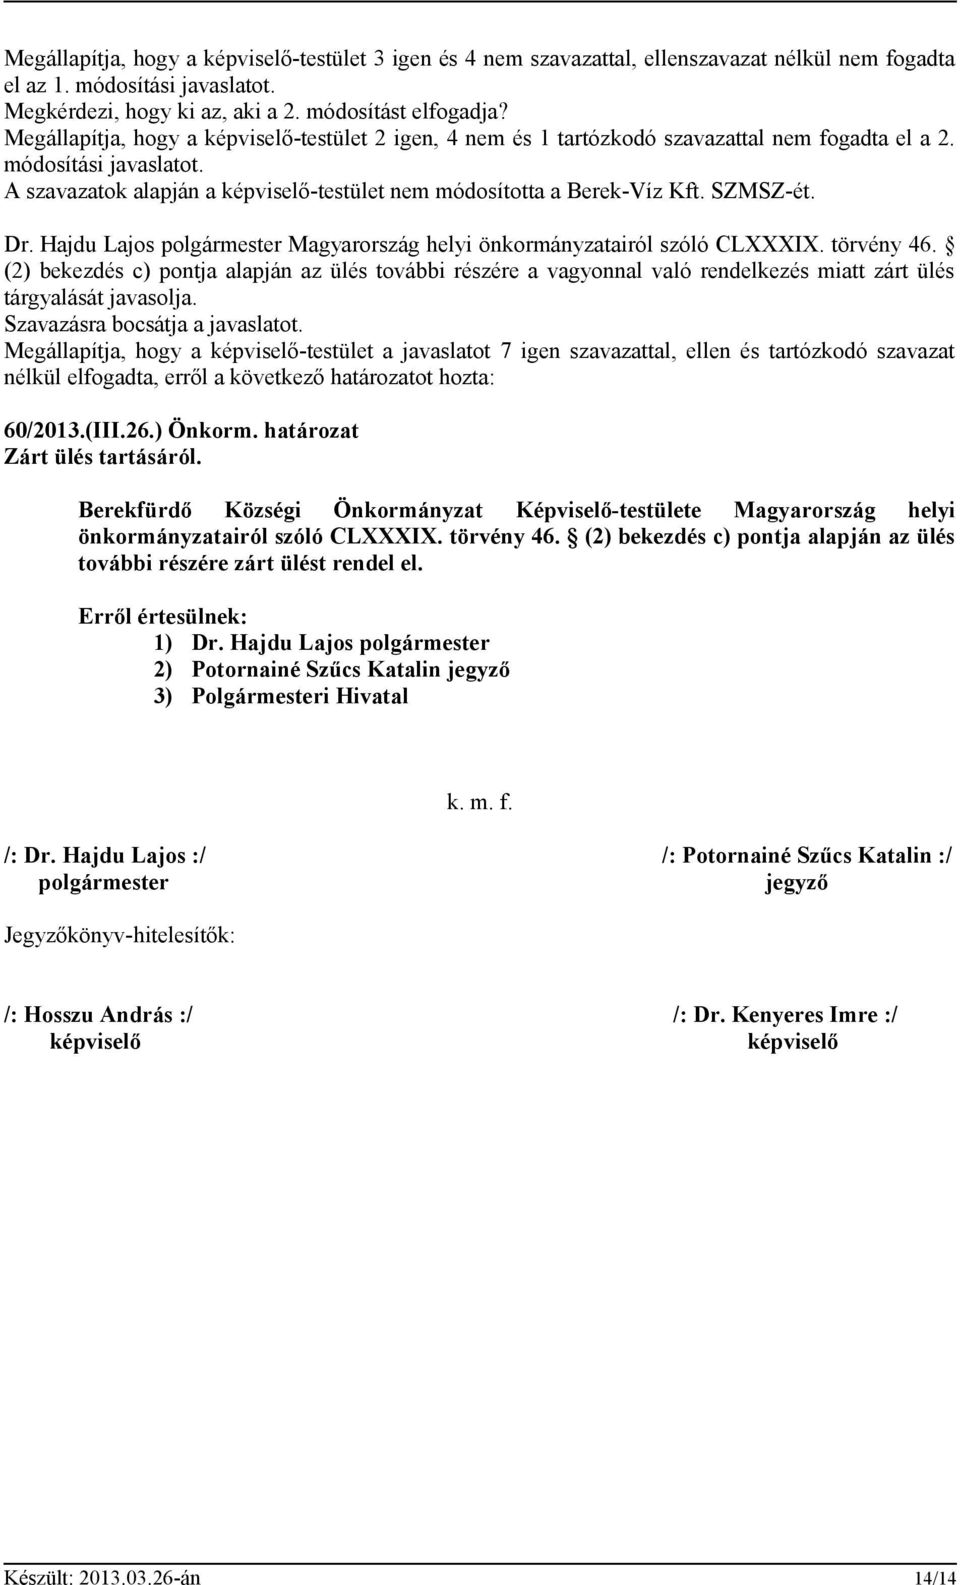 SZMSZ-ét. Dr. Hajdu Lajos polgármester Magyarország helyi önkormányzatairól szóló CLXXXIX. törvény 46.